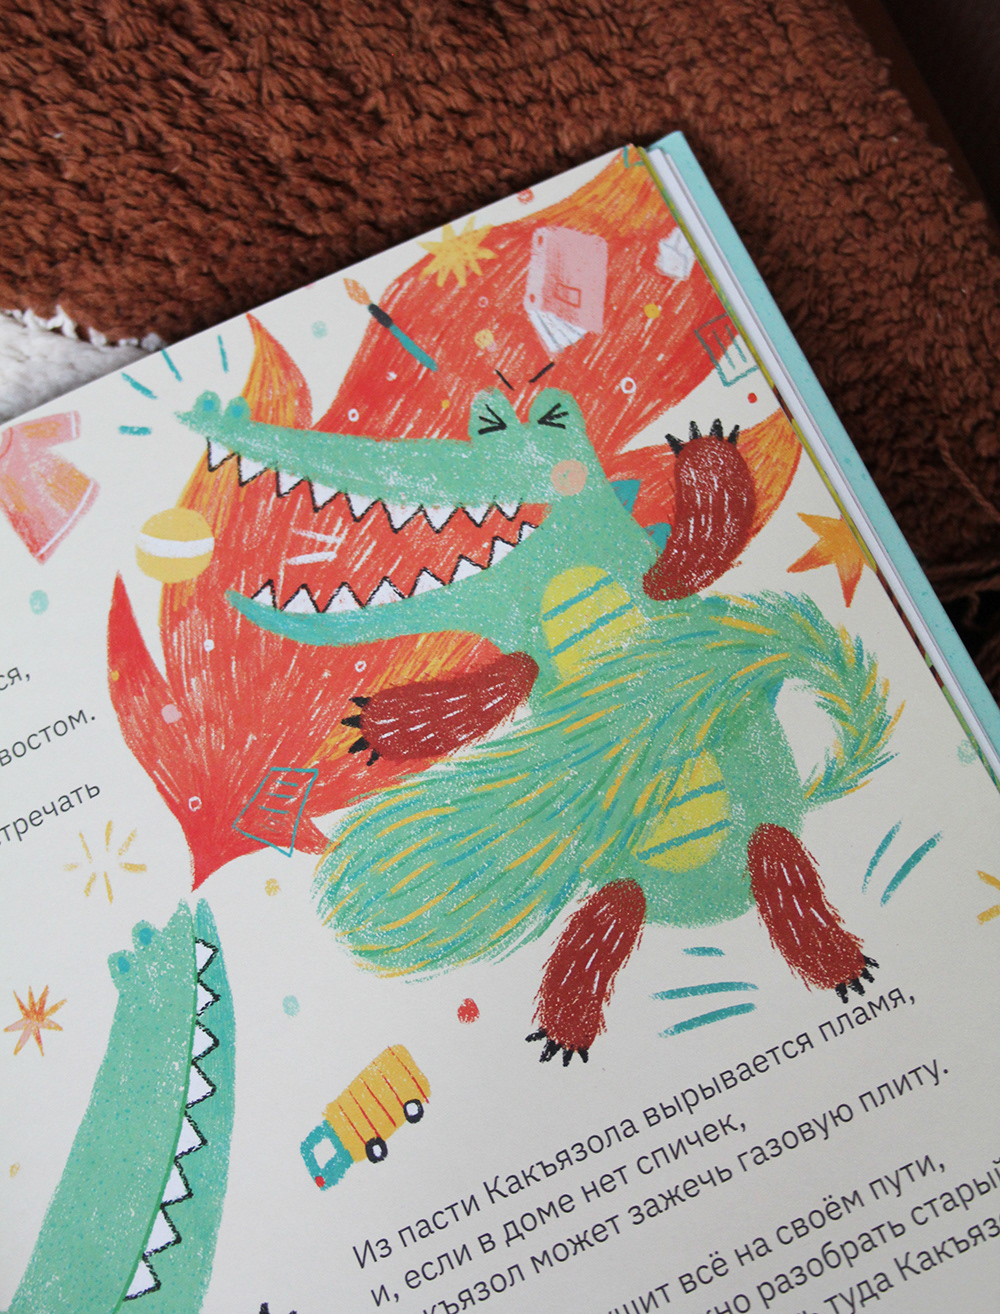 книга book дети children Character design  digital illustration иллюстрация рисунок ILLUSTRATION  artwork